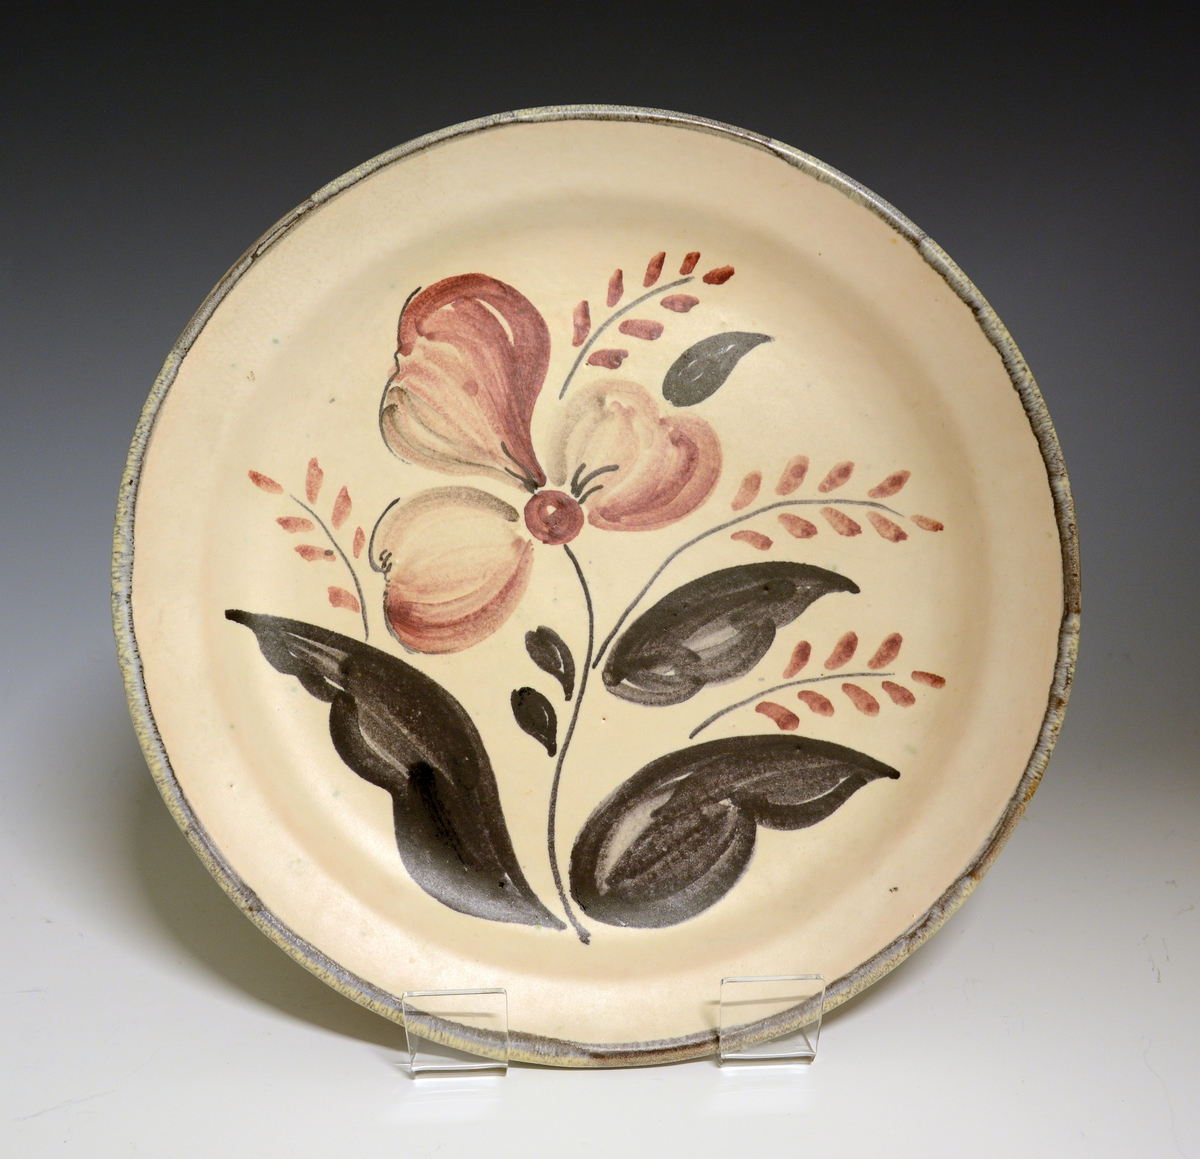 Prot: Flat tallerken av porselen med glatt kant. "Lyserødbeige" glasur. Flaten dekorert med stiliserte blomster i blågrå og brune farger. Kanten brukket opp i gråbrun farge.